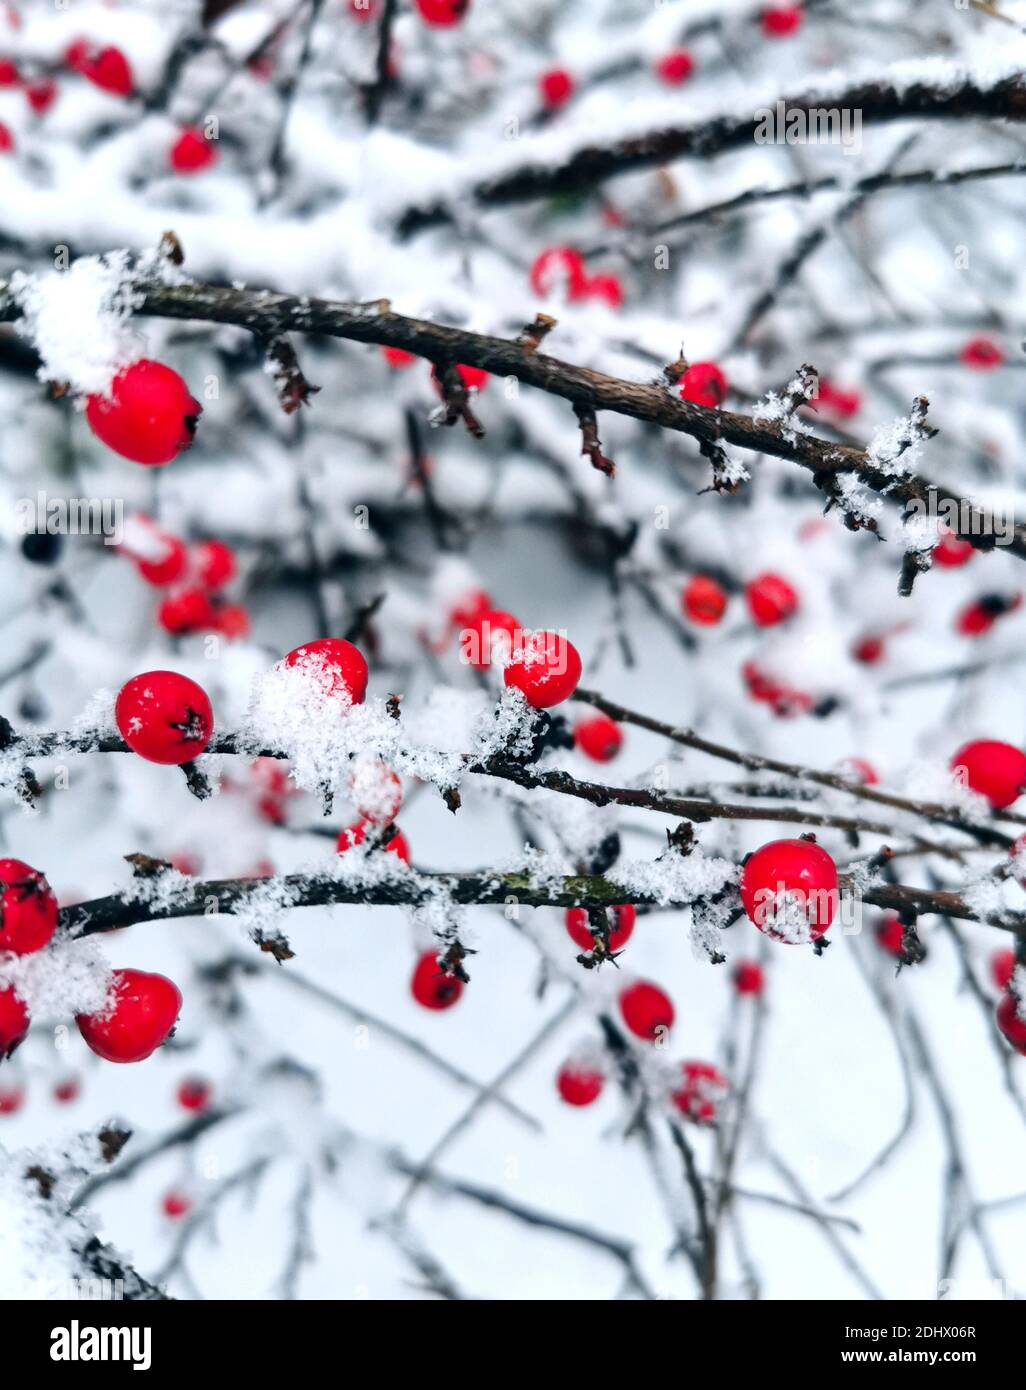 Baies rouges recouvertes de neige fraîchement tombée en hiver matin Banque D'Images